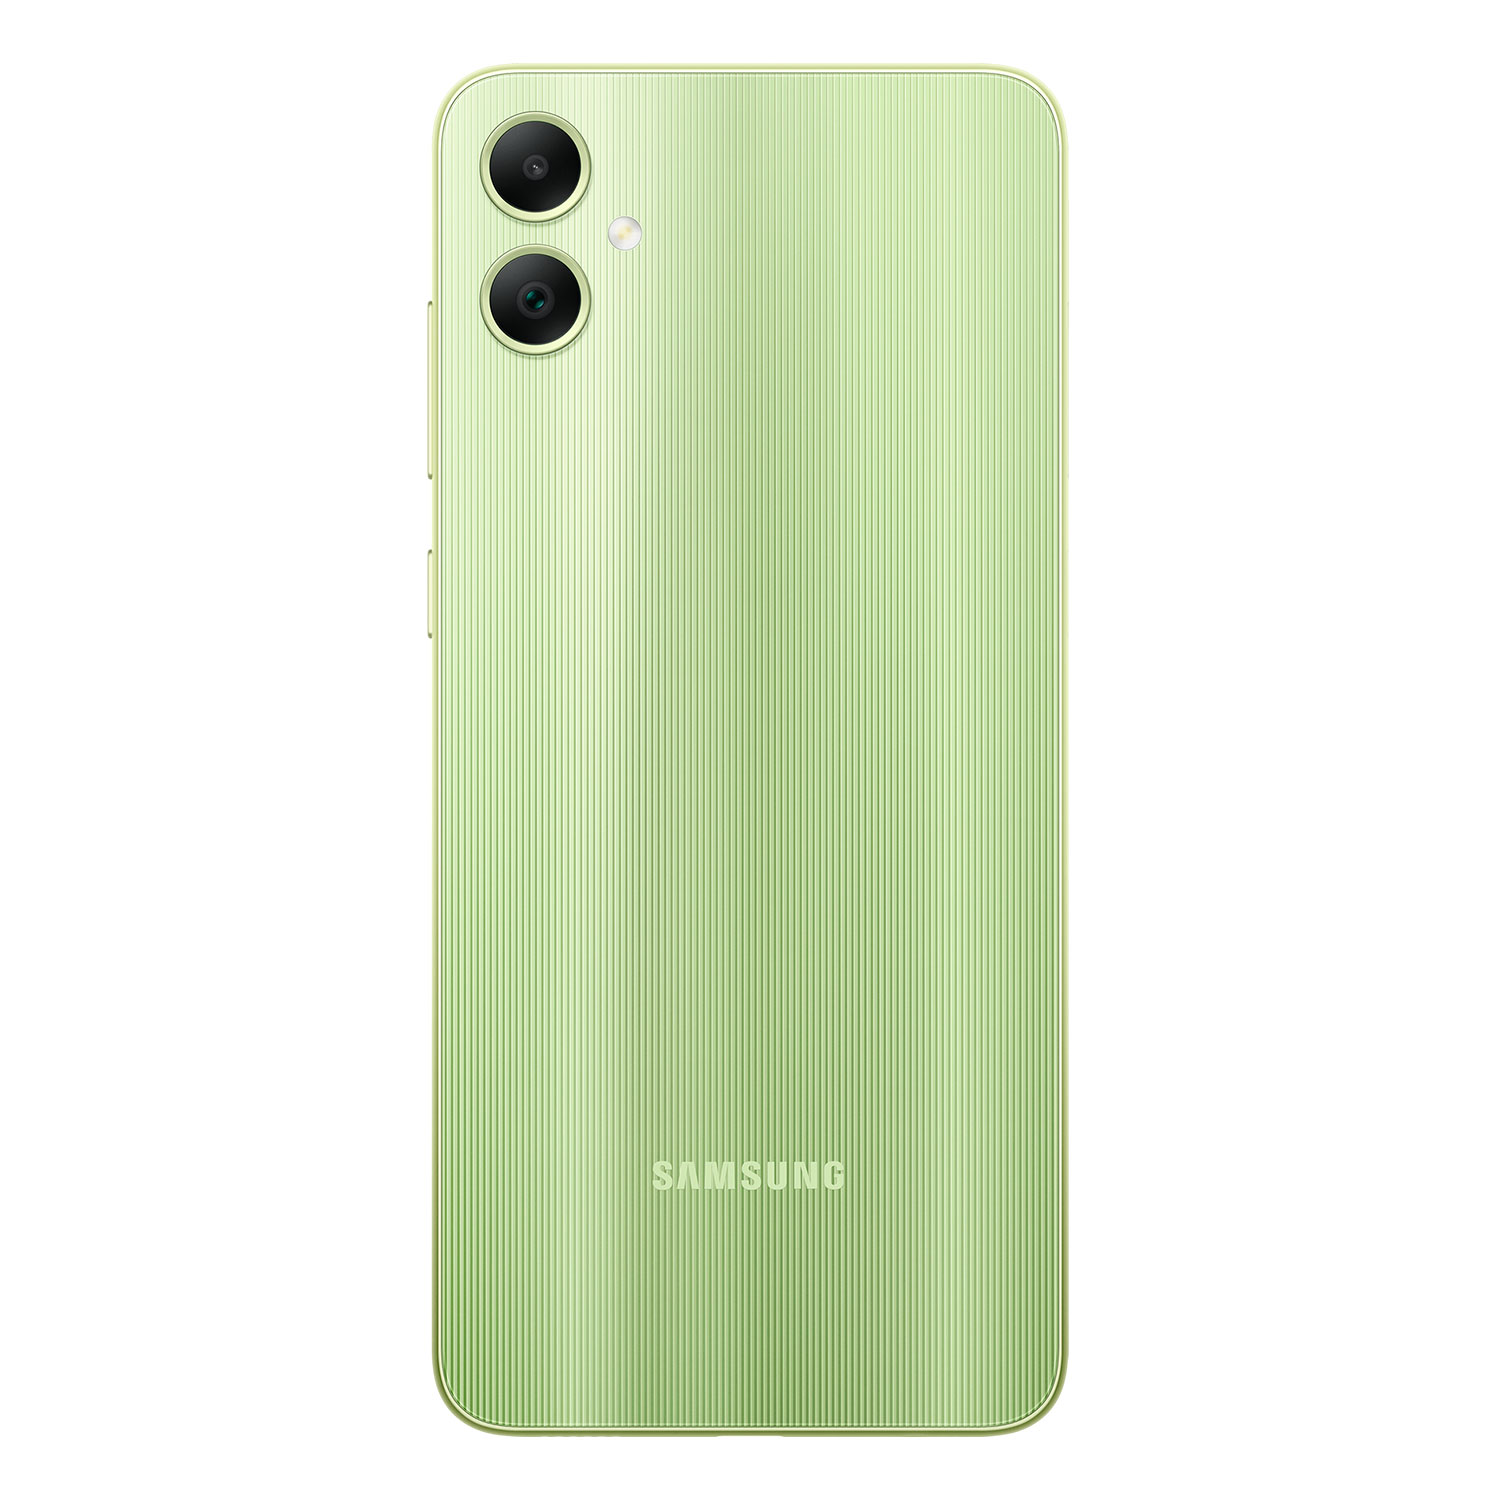 Smartphone Samsung Galaxy A05 SM-A055F 64GB 4GB RAM Dual SIM Tela 6.7" - Verde

